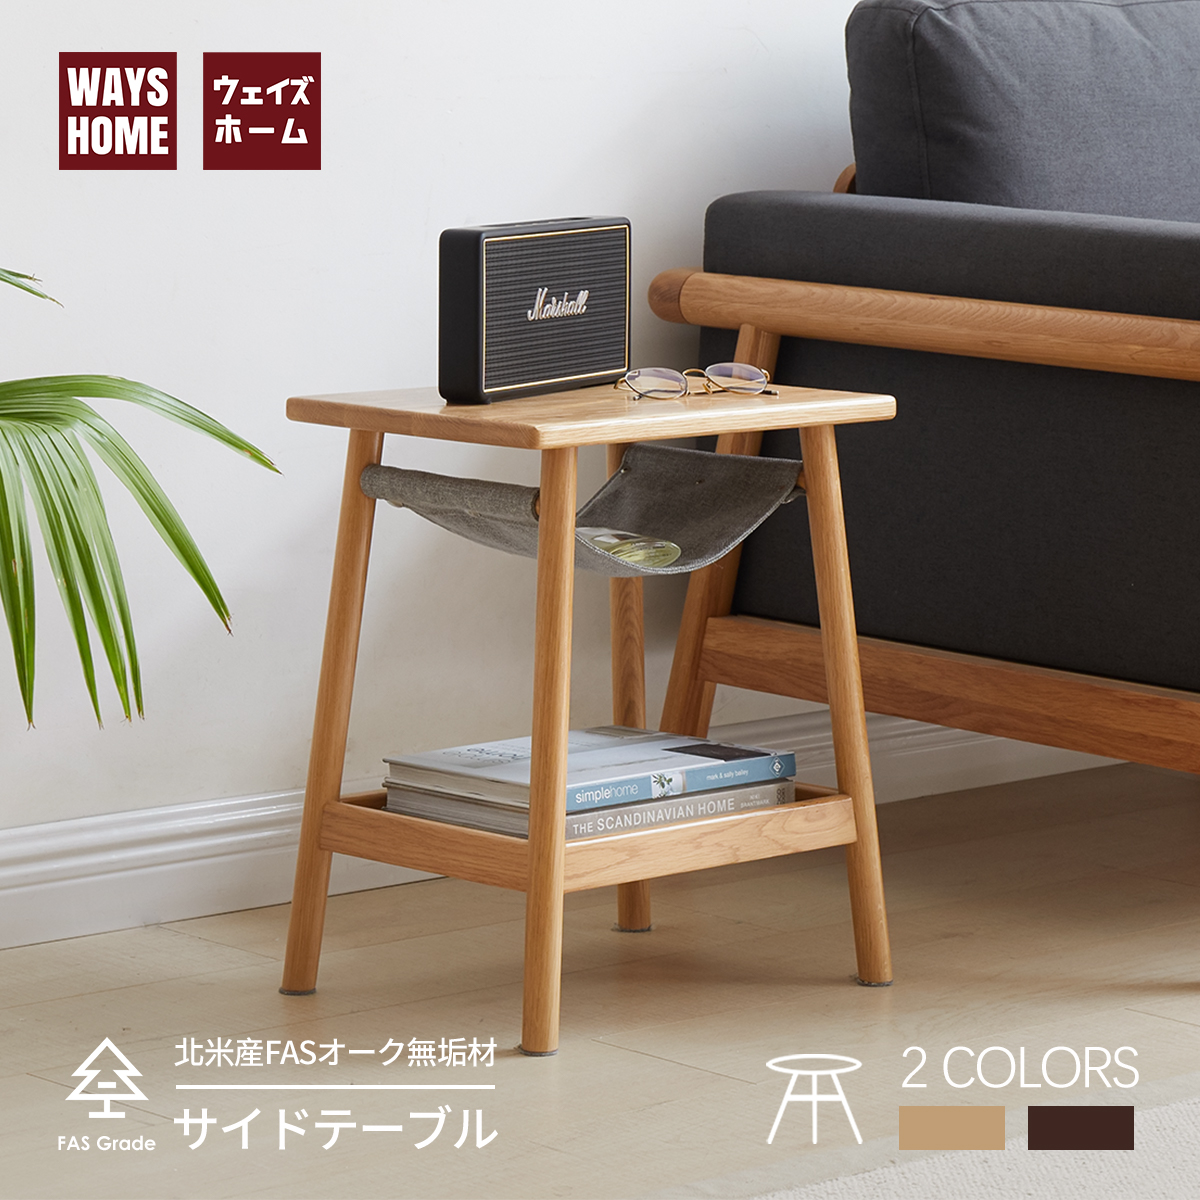 【楽天市場】WAYSHOME サイドテーブル 完成品 3段 北欧 ナイト 